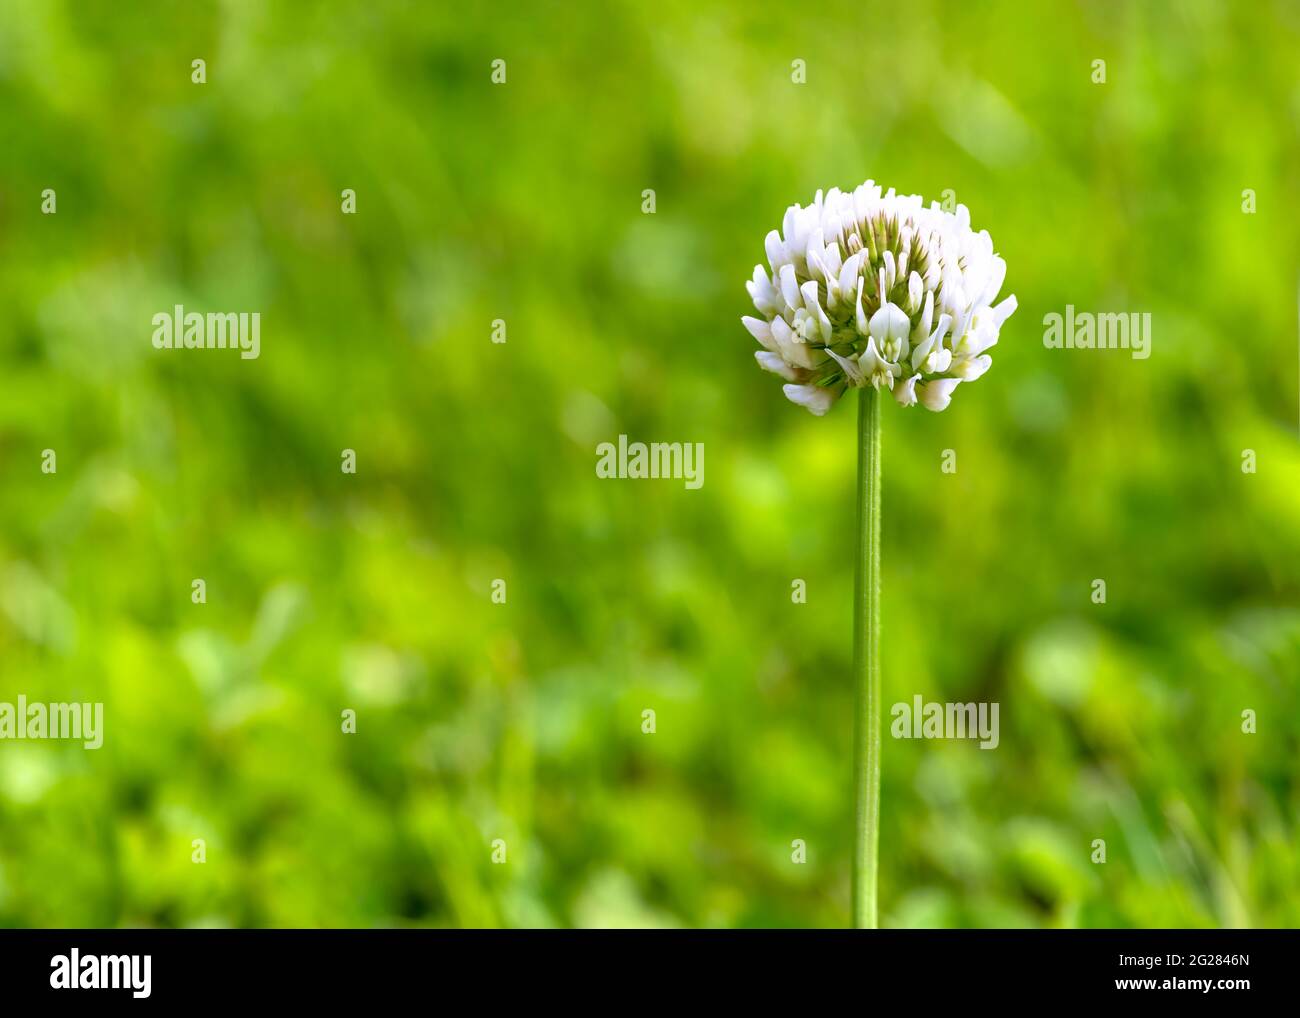 Selektiver Fokus auf eine einzelne weiße Kleeblatt Blume Trifolium repens, auch bekannt als Dutch Clover, Ladino Clover, oder Ladino, Grüngras Hintergrund ist DIS- Stockfoto